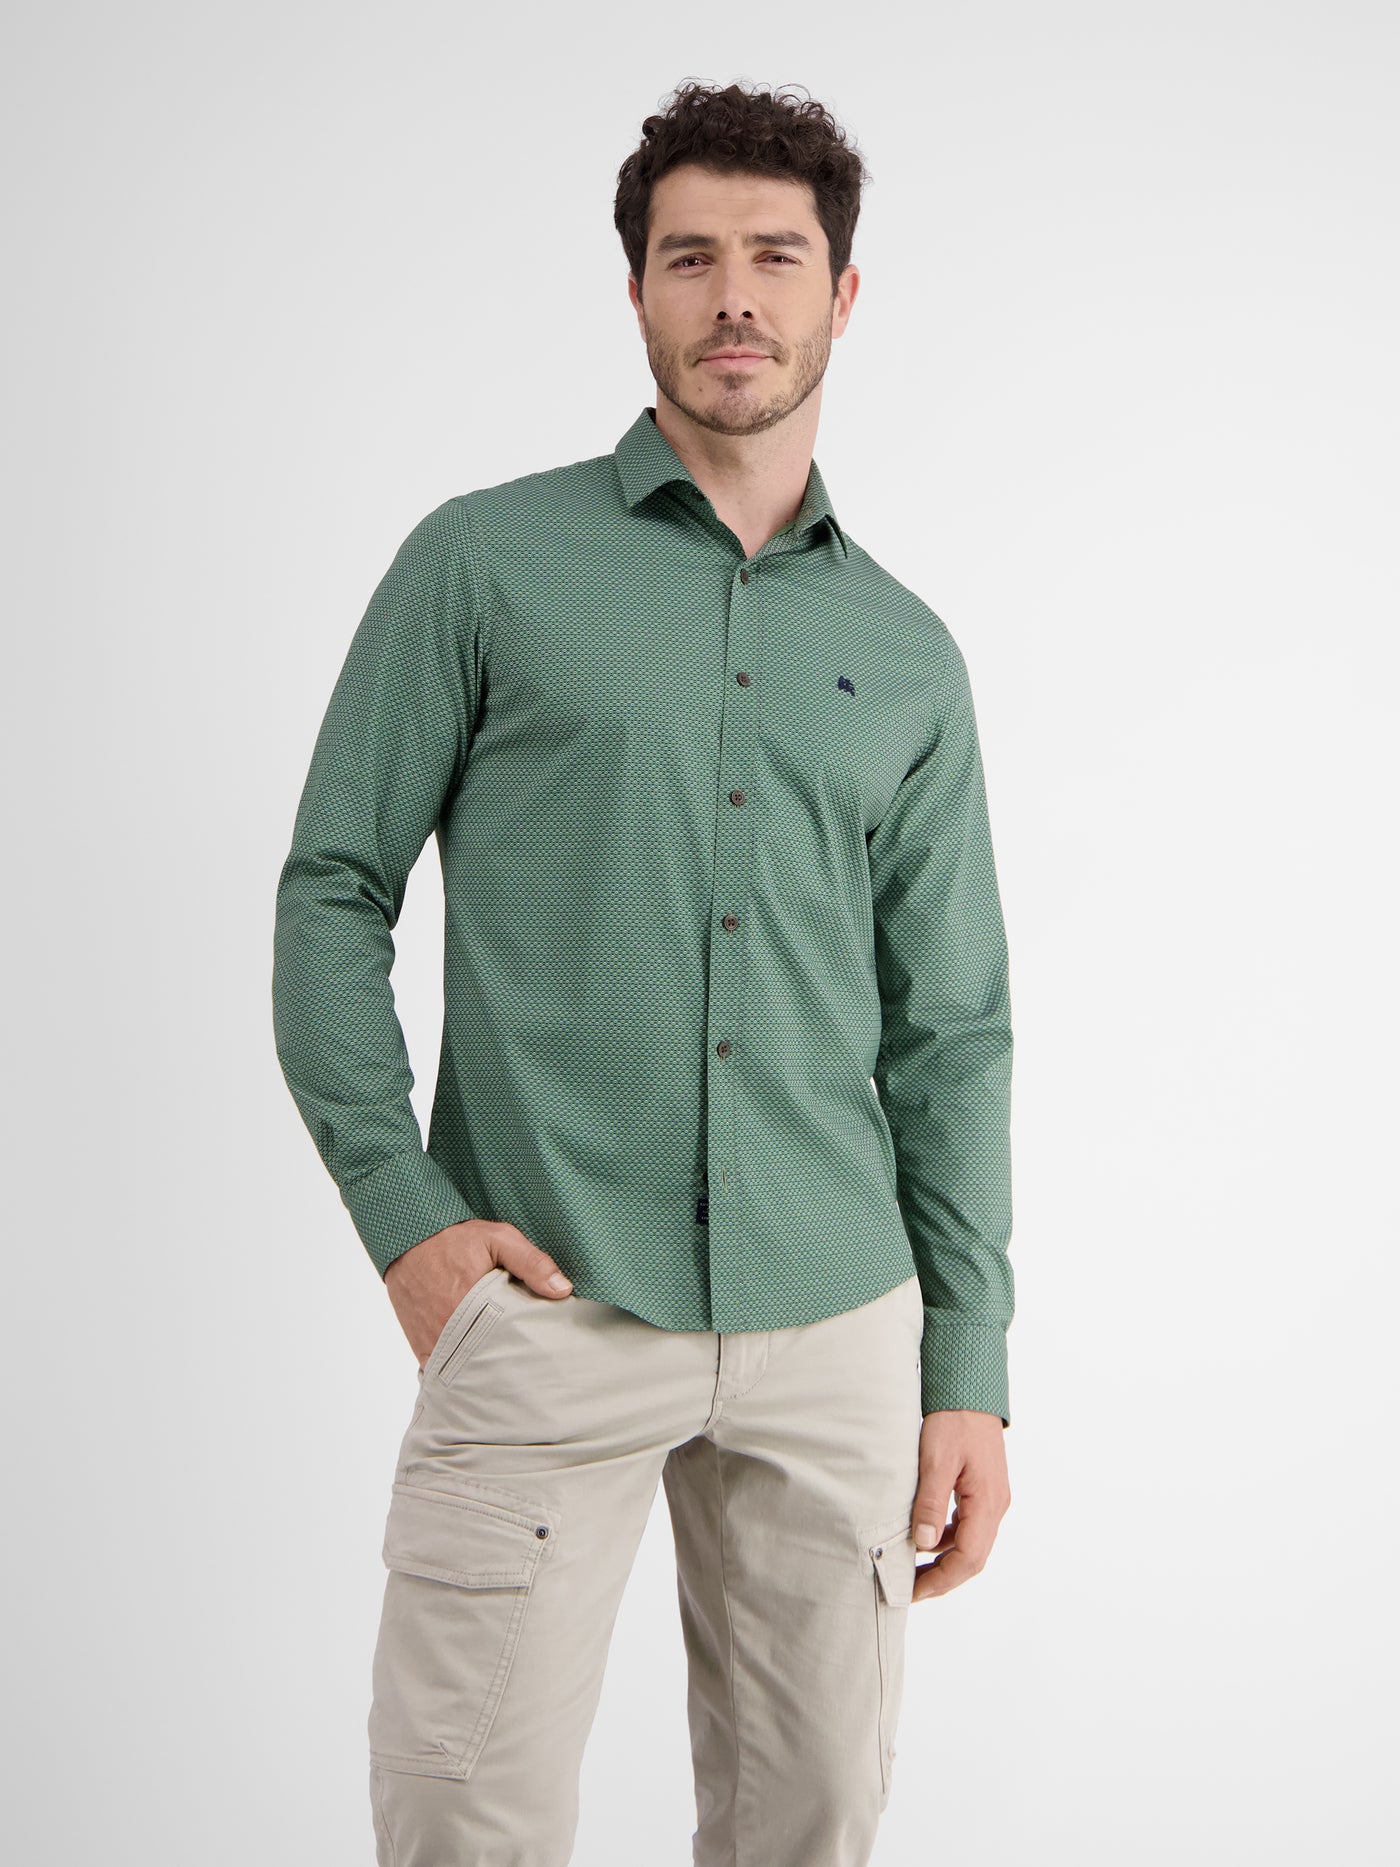 Poplin shirt with shark collar, dot print